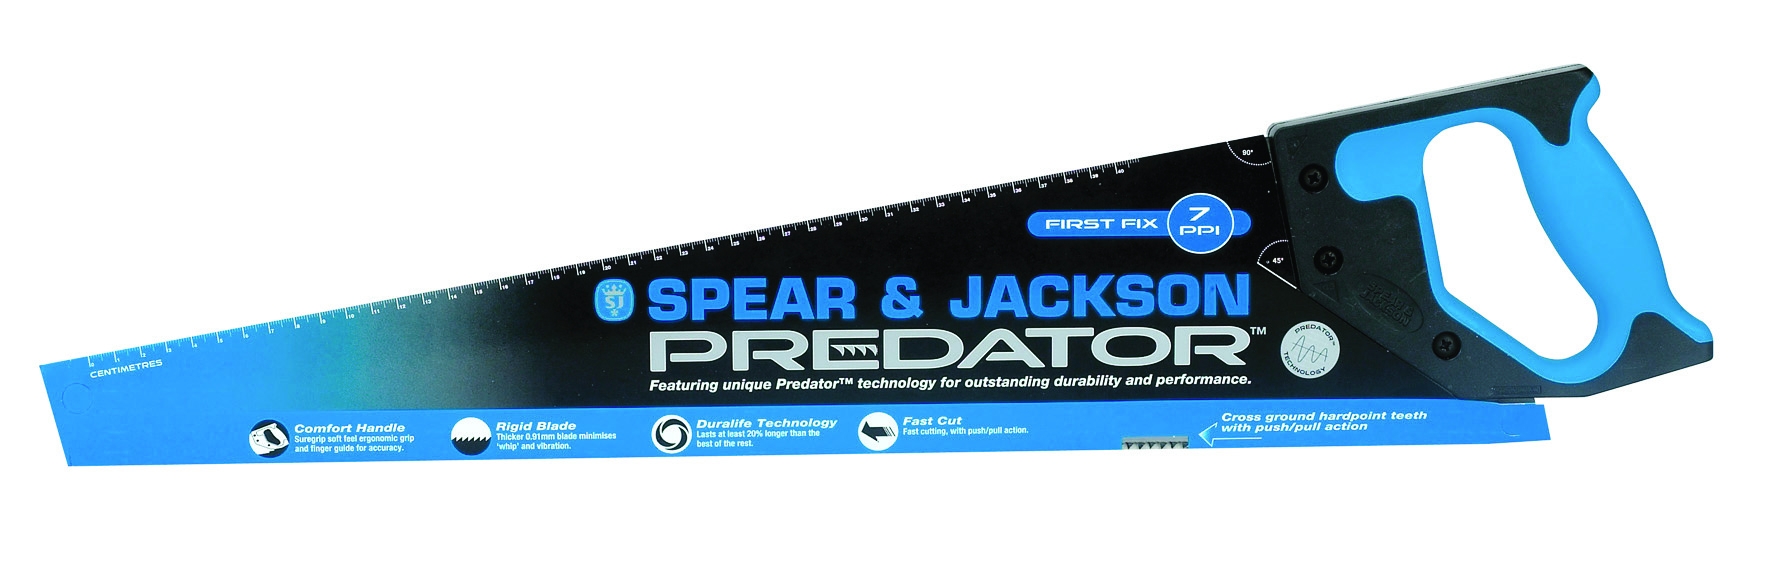 gebruik hypothese Kanon Spear & Jackson - handzaag predator - hout grof - 7 ppi